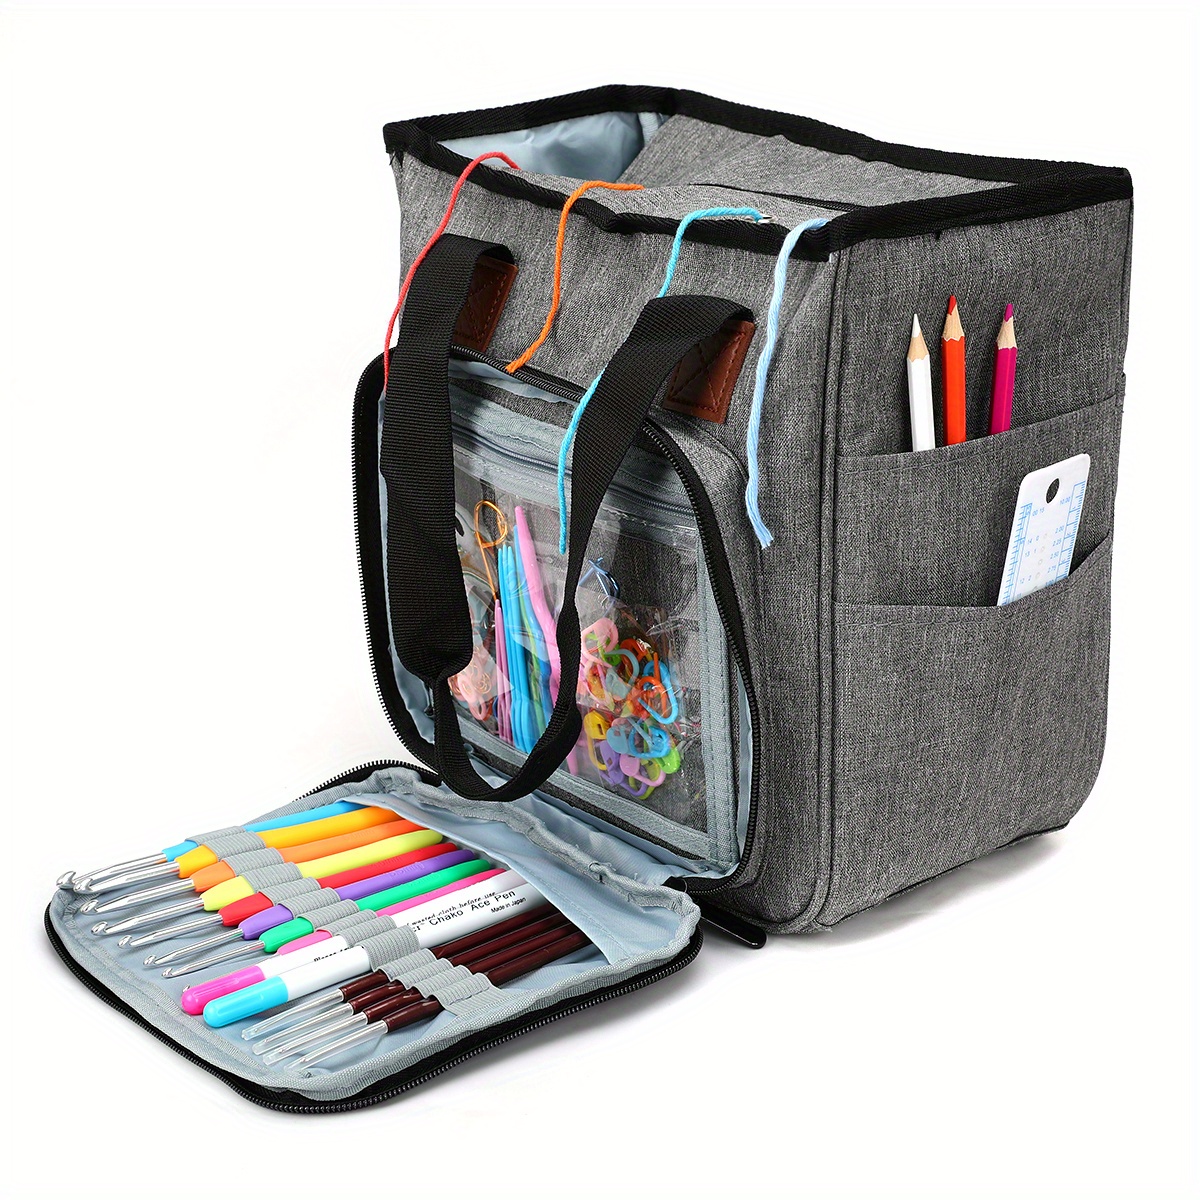 Knitting Bag - Yarn Tote Organizer w/Tool Case, 7 Pockets +